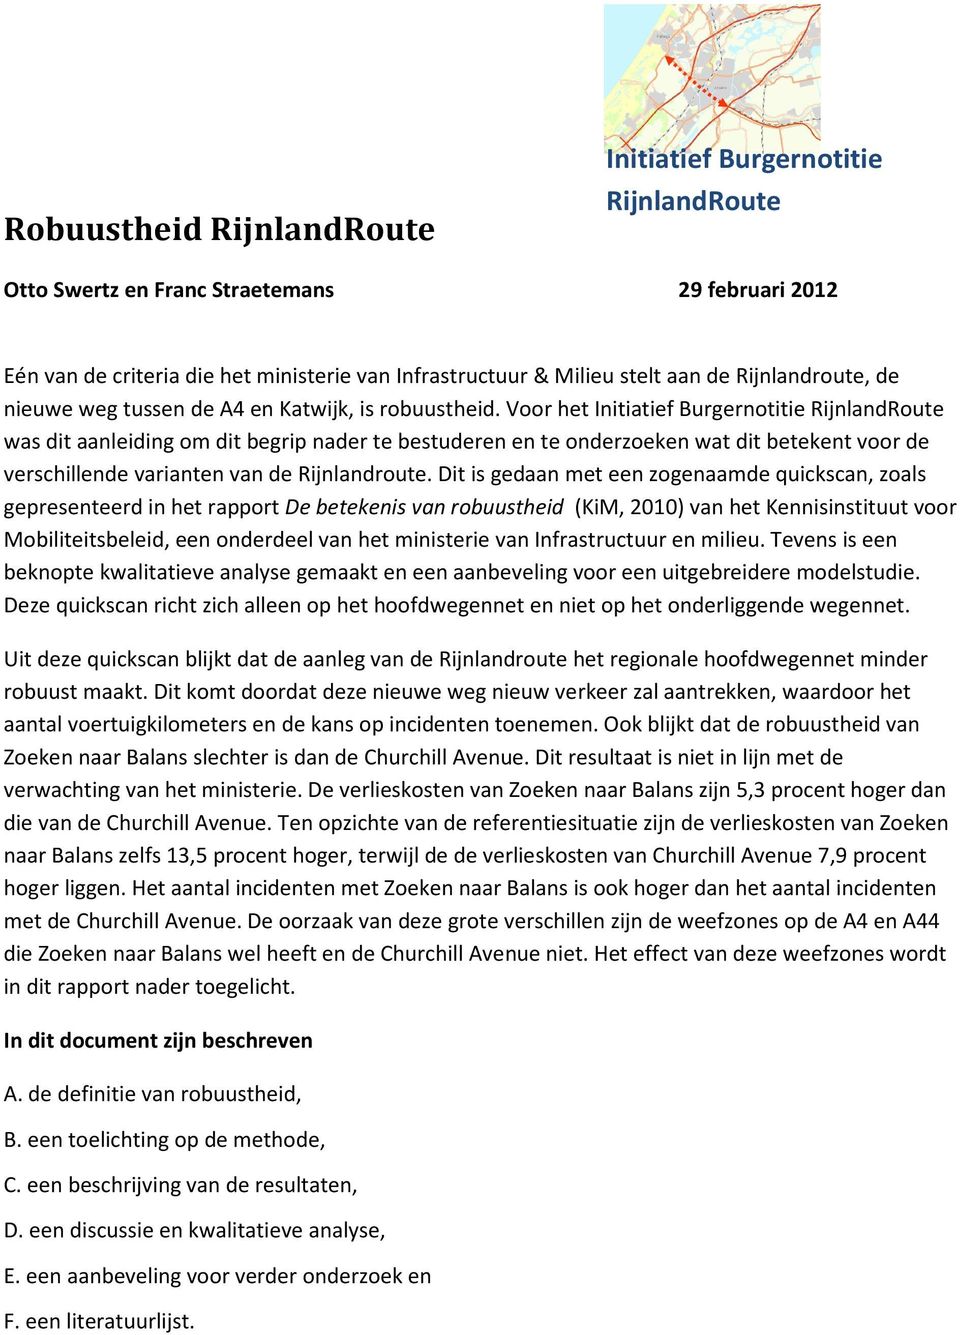 Voor het Initiatief Burgernotitie RijnlandRoute was dit aanleiding om dit begrip nader te bestuderen en te onderzoeken wat dit betekent voor de verschillende varianten van de Rijnlandroute.